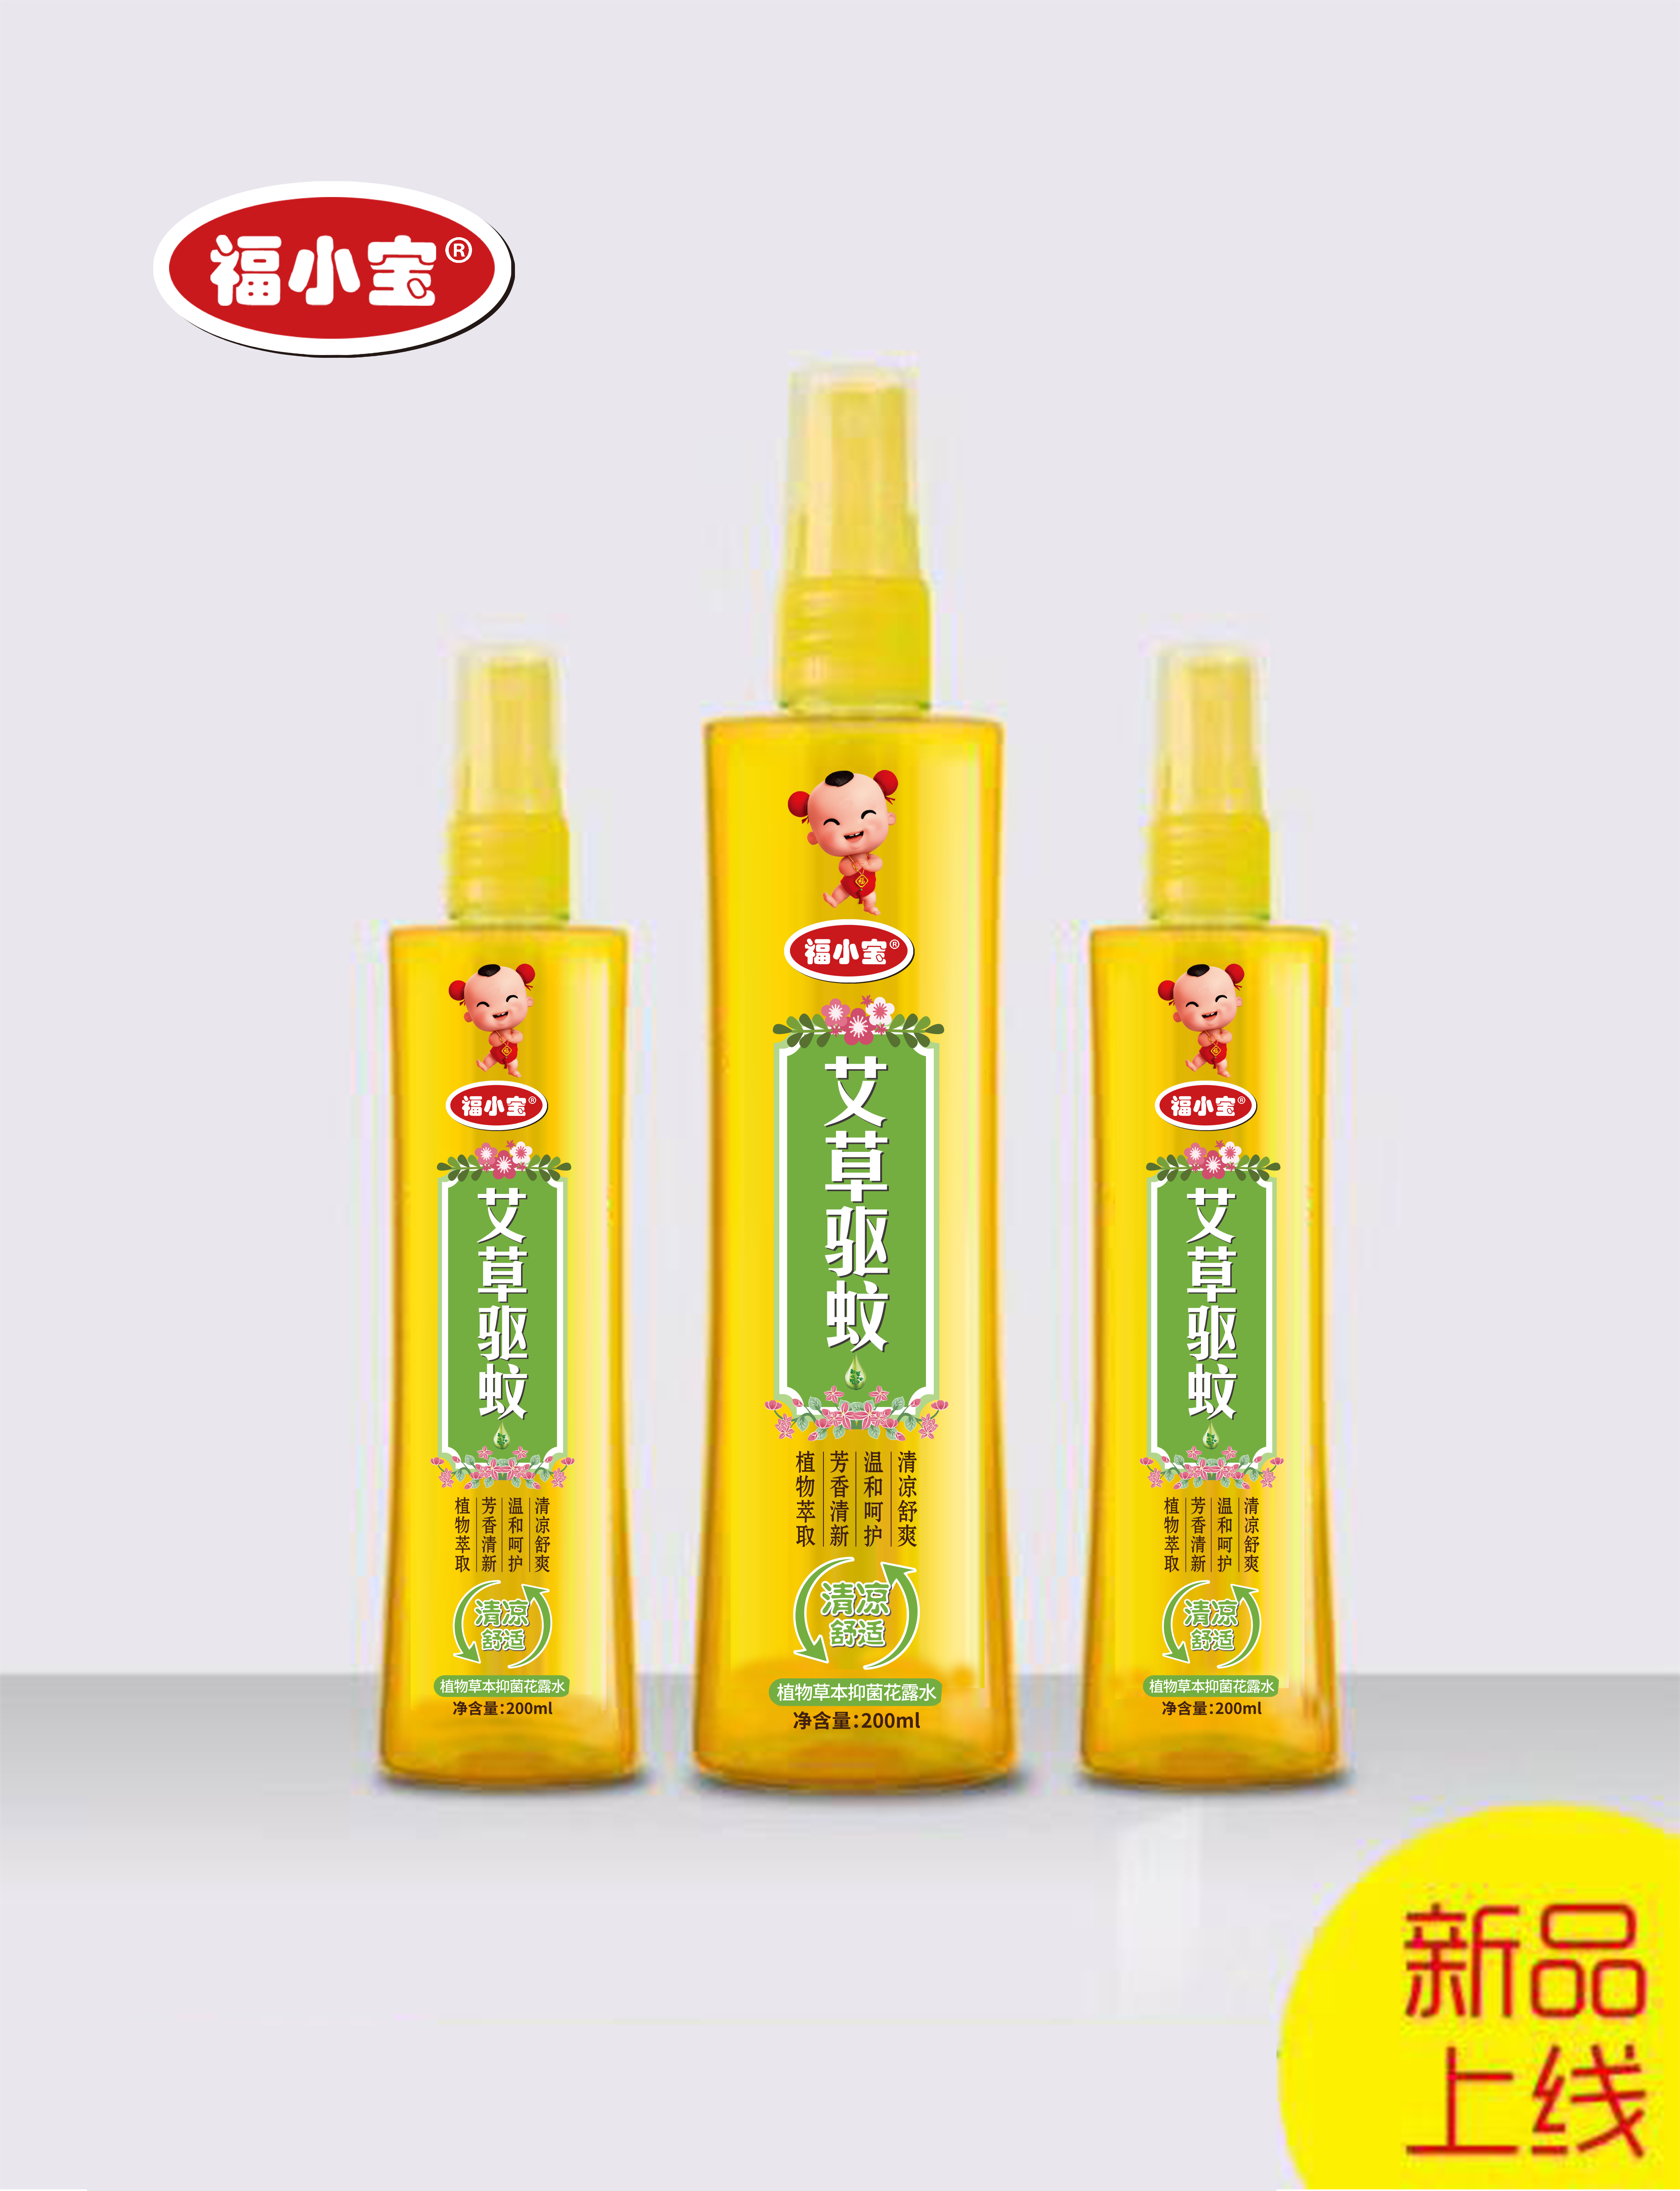 Guangxi Qijian Health Products Co., Ltd